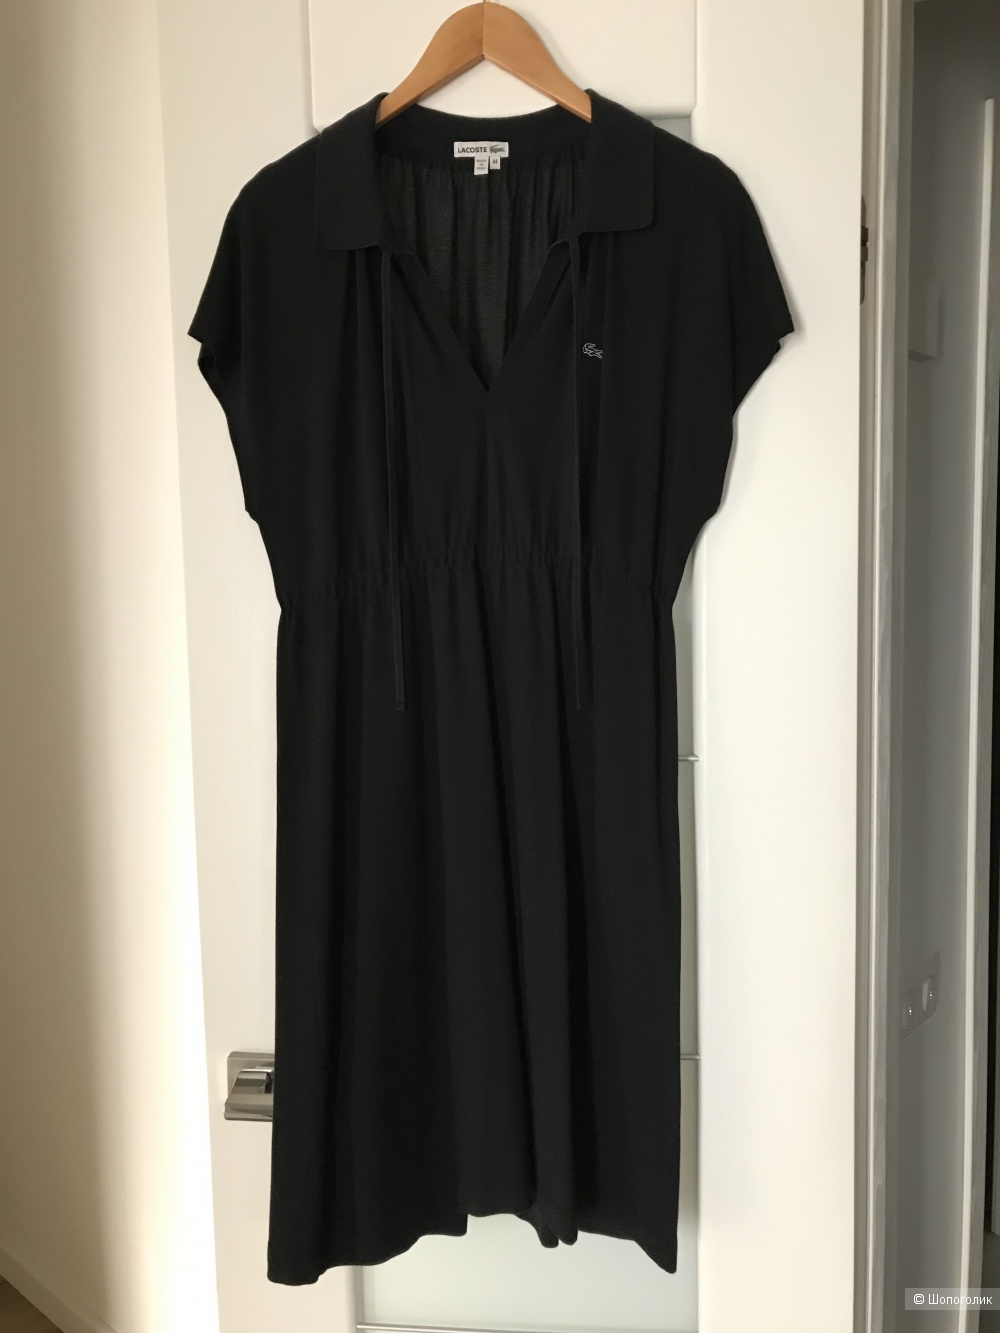 Платье Lacoste маркировка 44 на 48-50